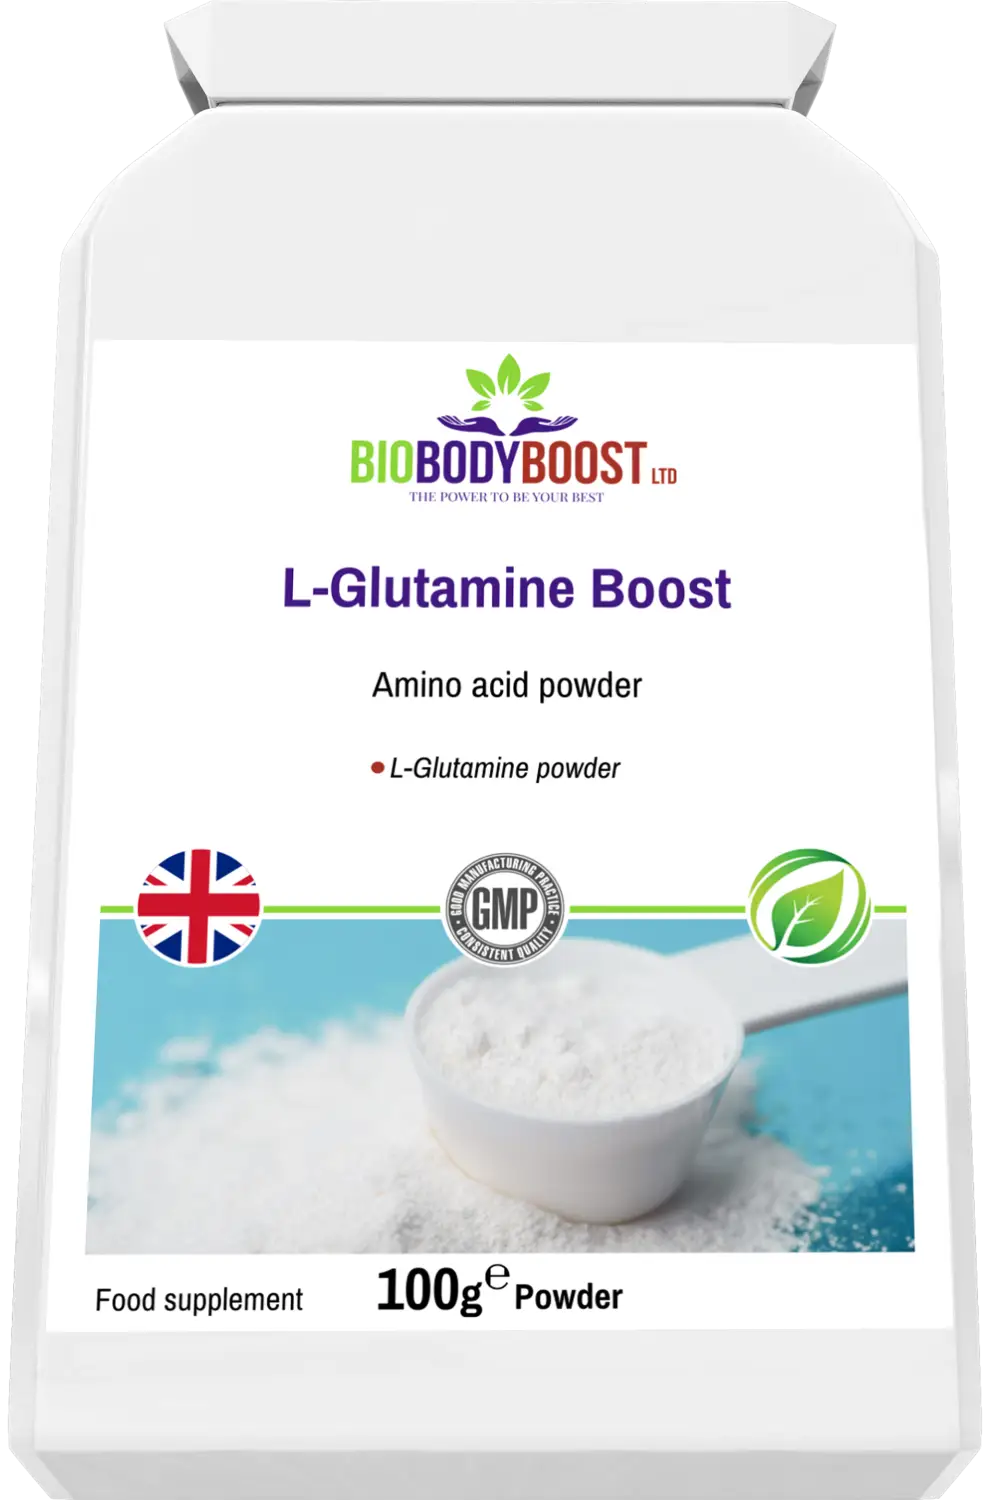 L-glutamine boost - vitamins & supplements